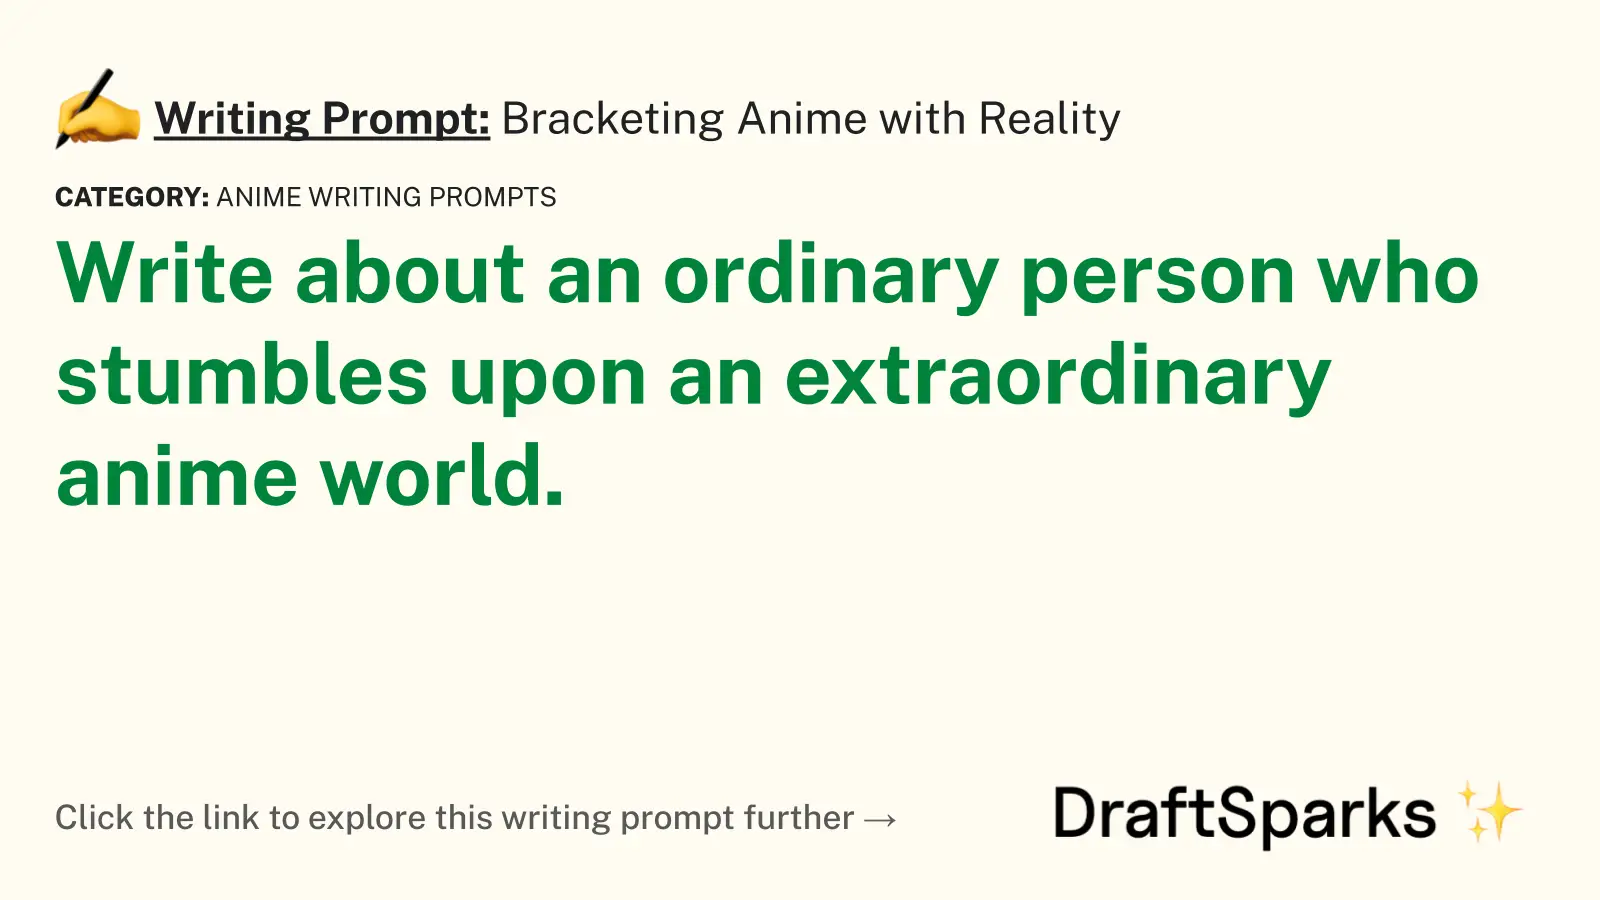 Bracketing Anime with Reality